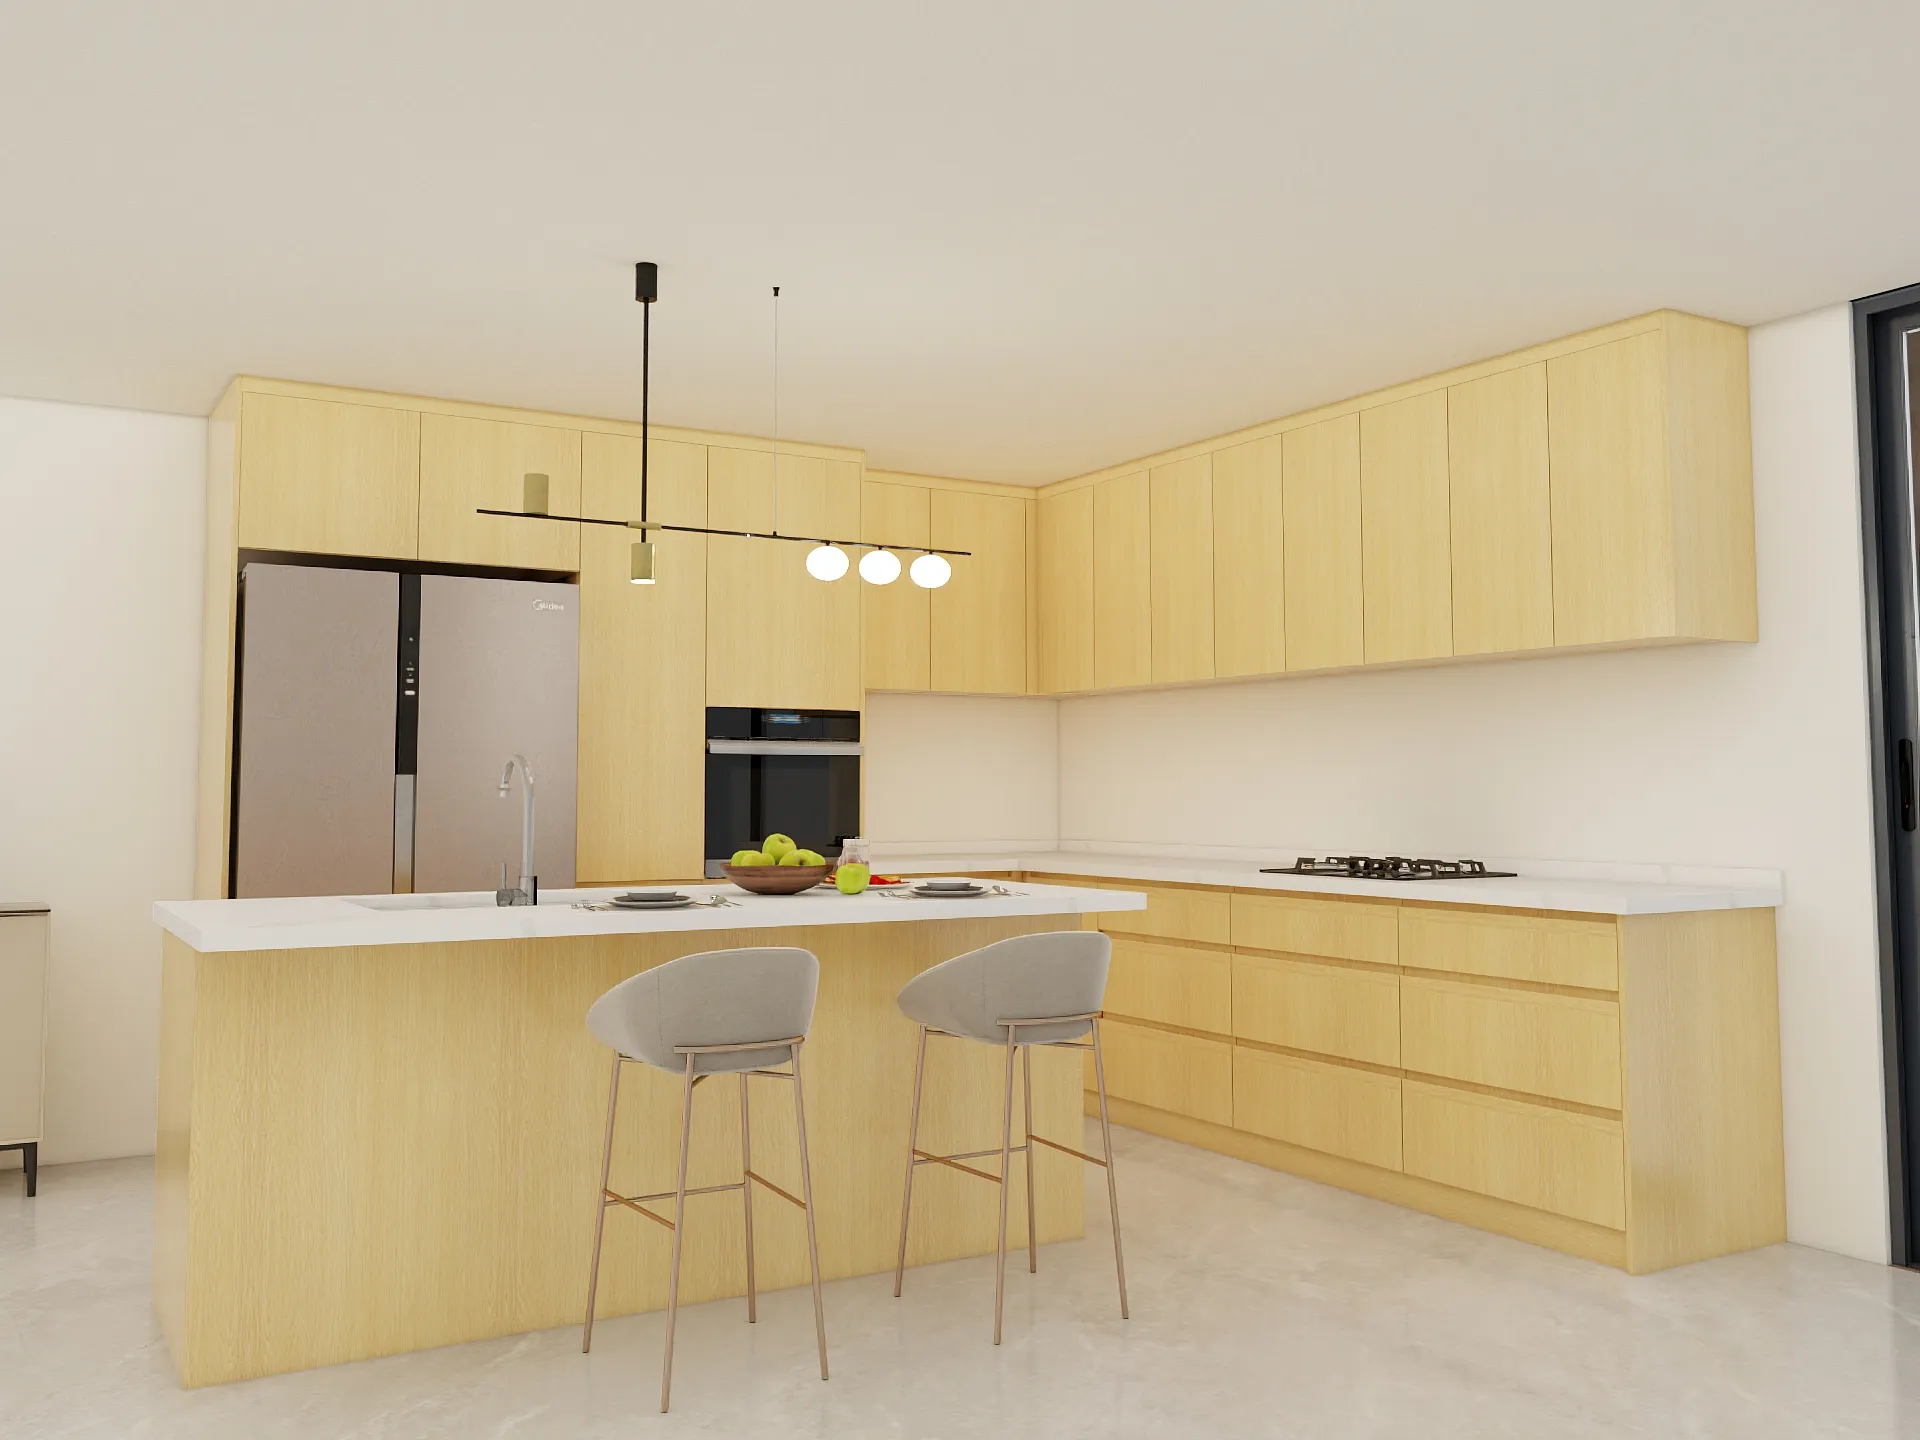 CBMmart kuvars tezgah mutfak dolabı meşe kaplama mutfak dolap tasarımı